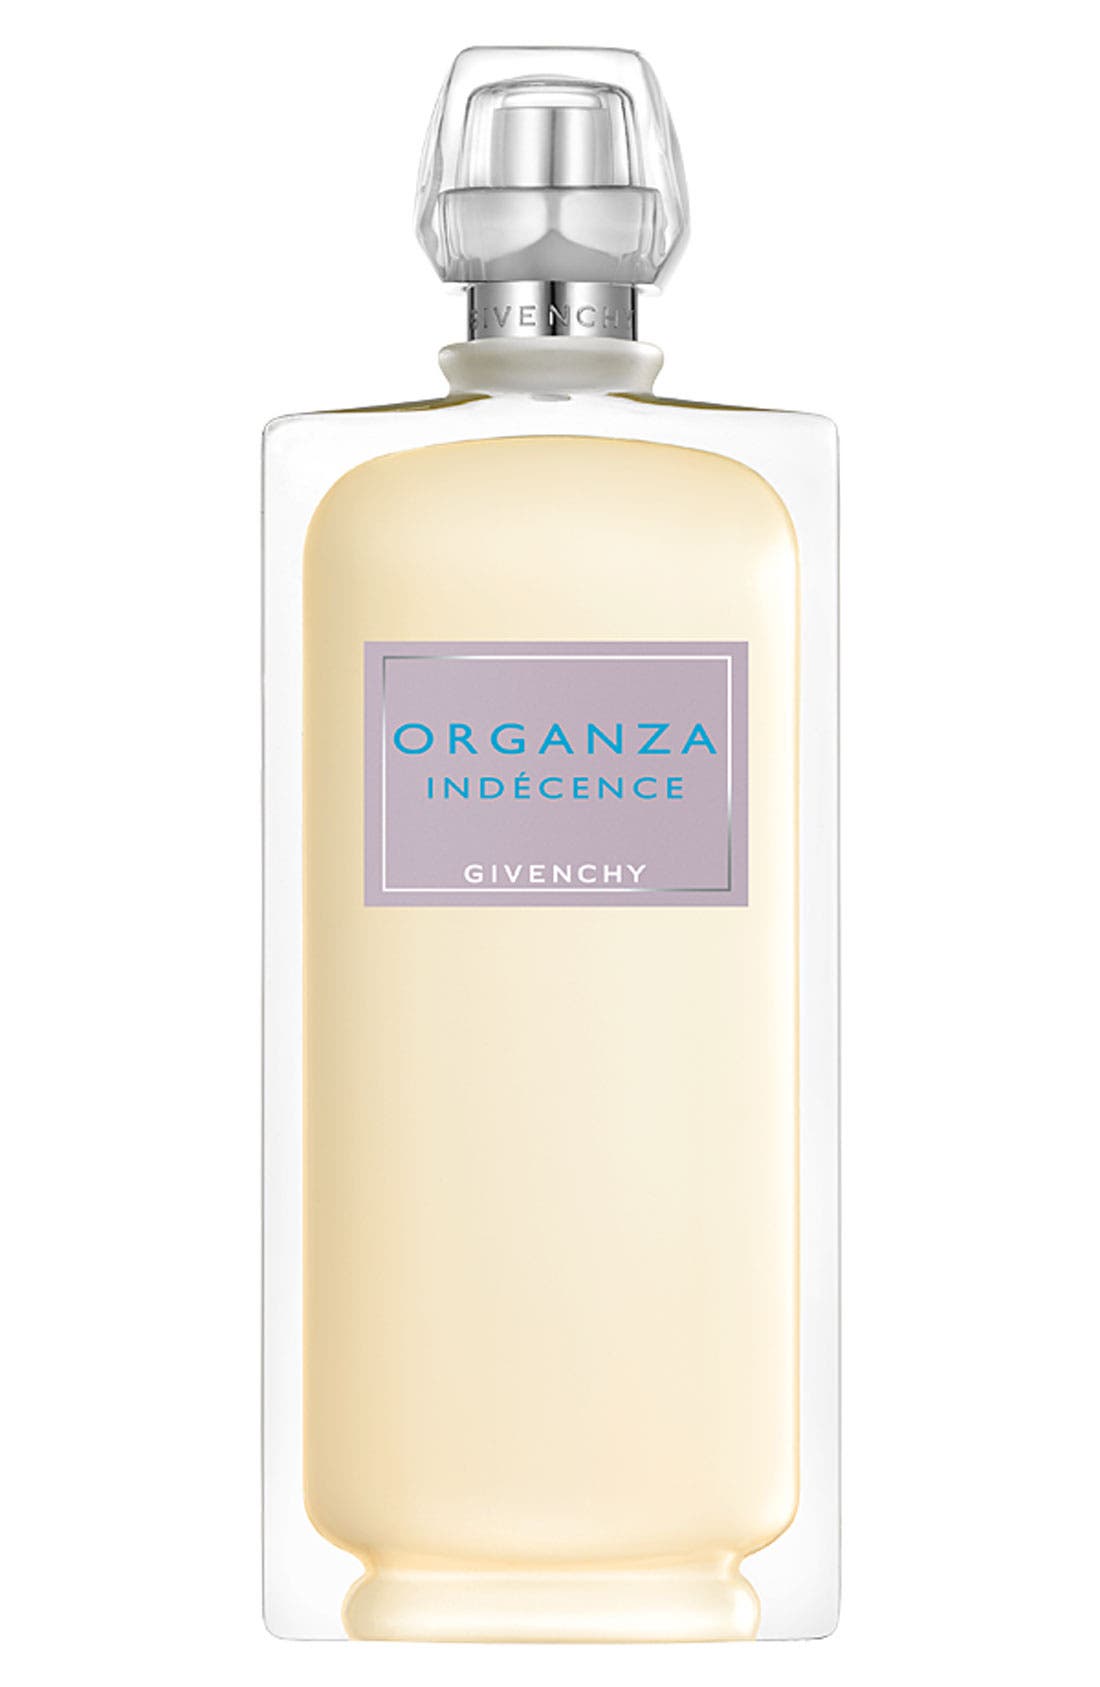 organza indecence for sale